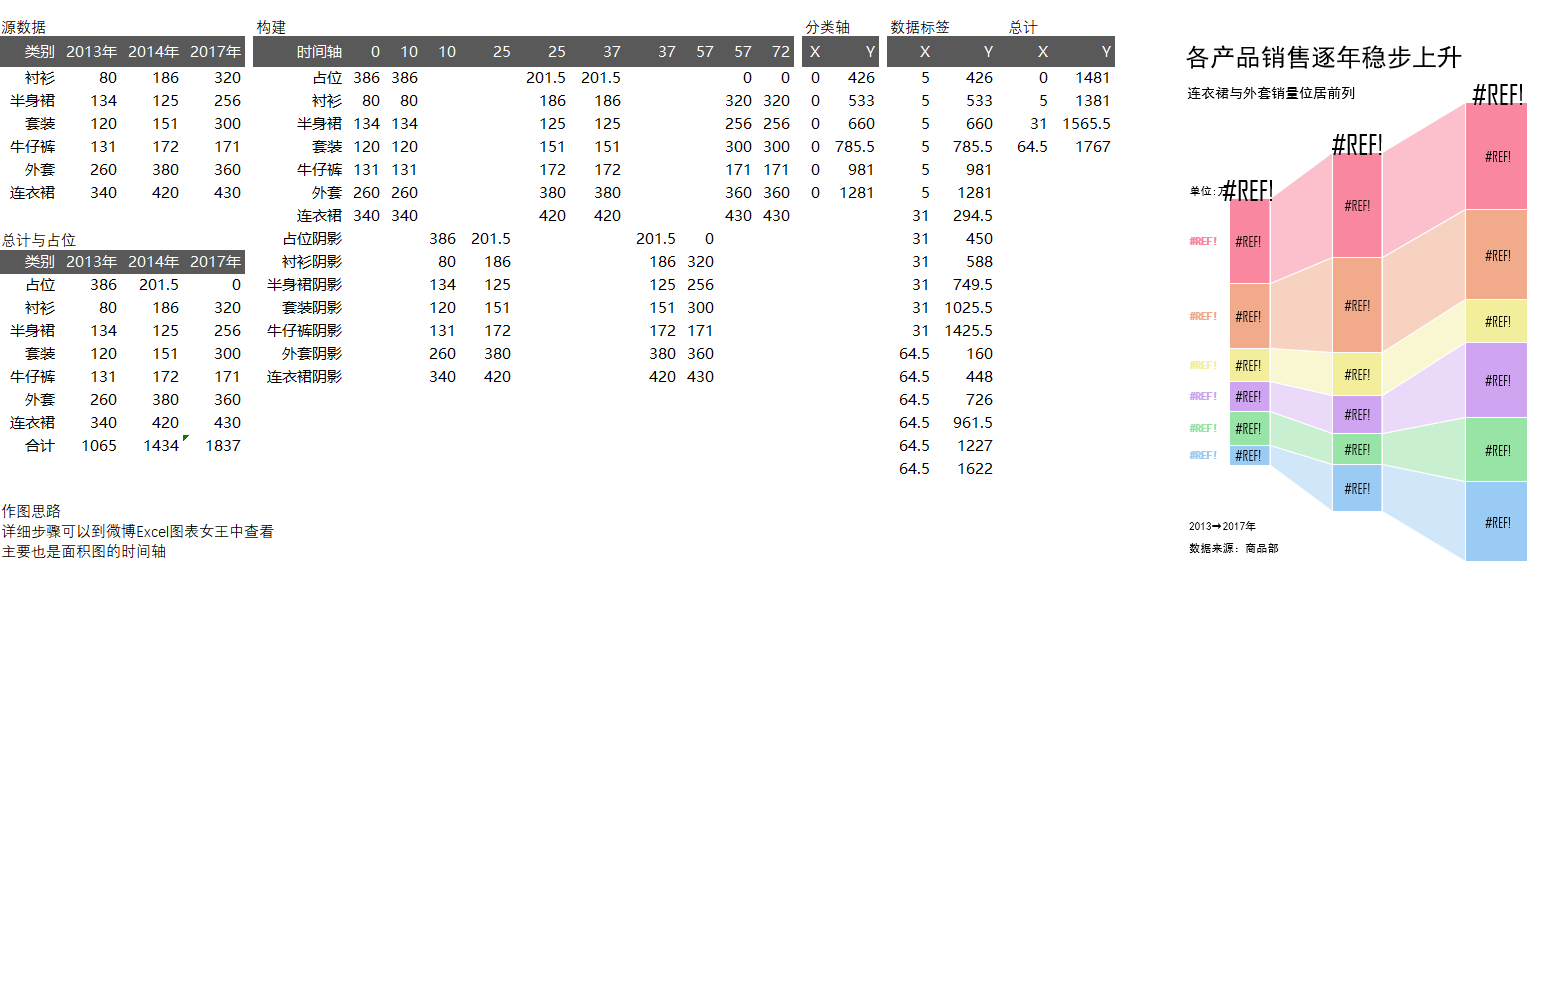 柱形图销量分析图Excel模板